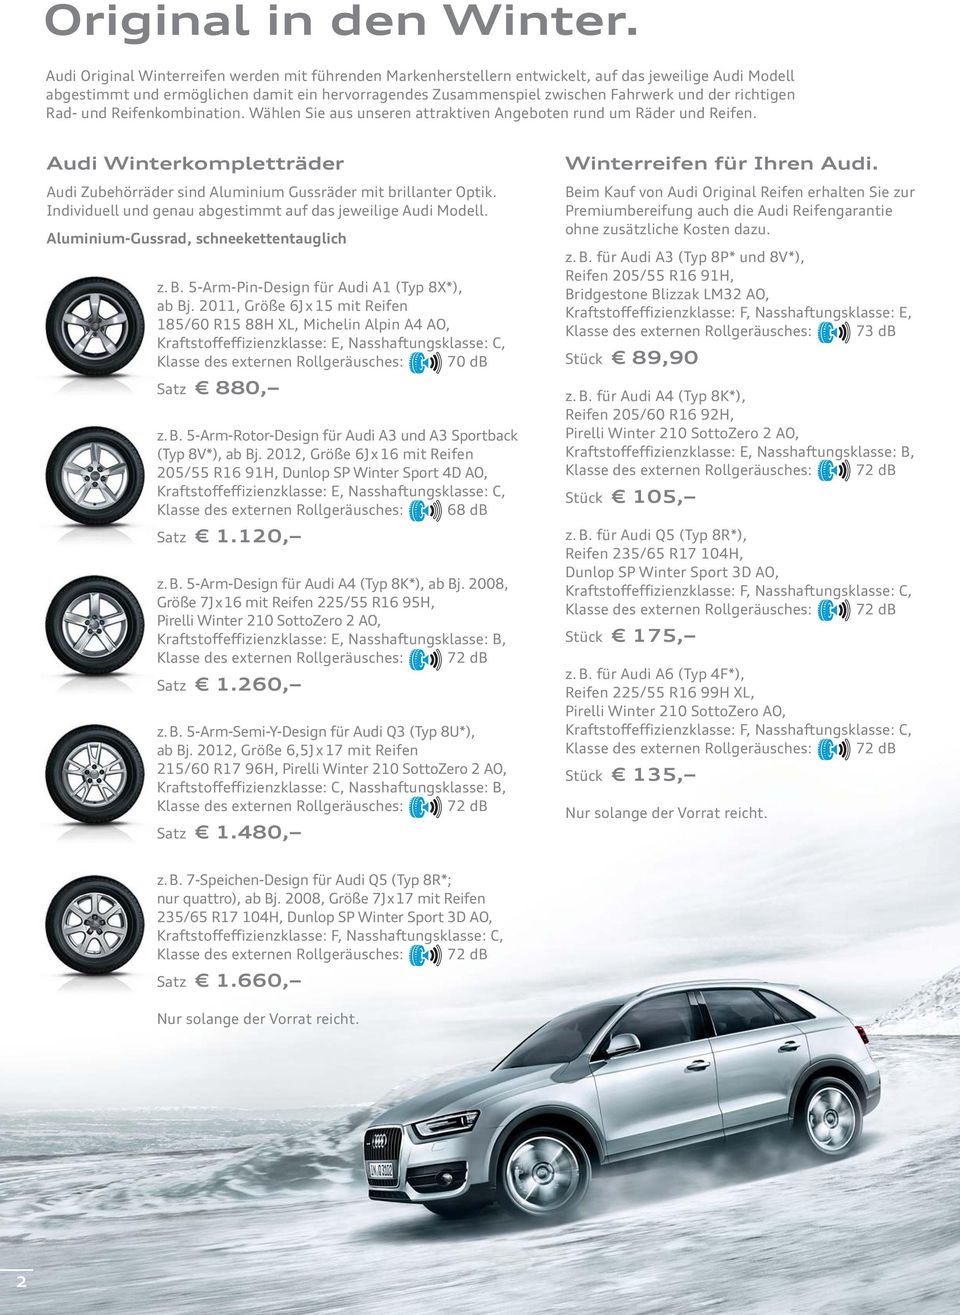 richtigen Rad- und Reifenkombination. Wählen Sie aus unseren attraktiven Angeboten rund um Räder und Reifen. Audi Winterkompletträder Audi Zubehörräder sind Aluminium Gussräder mit brillanter Optik.